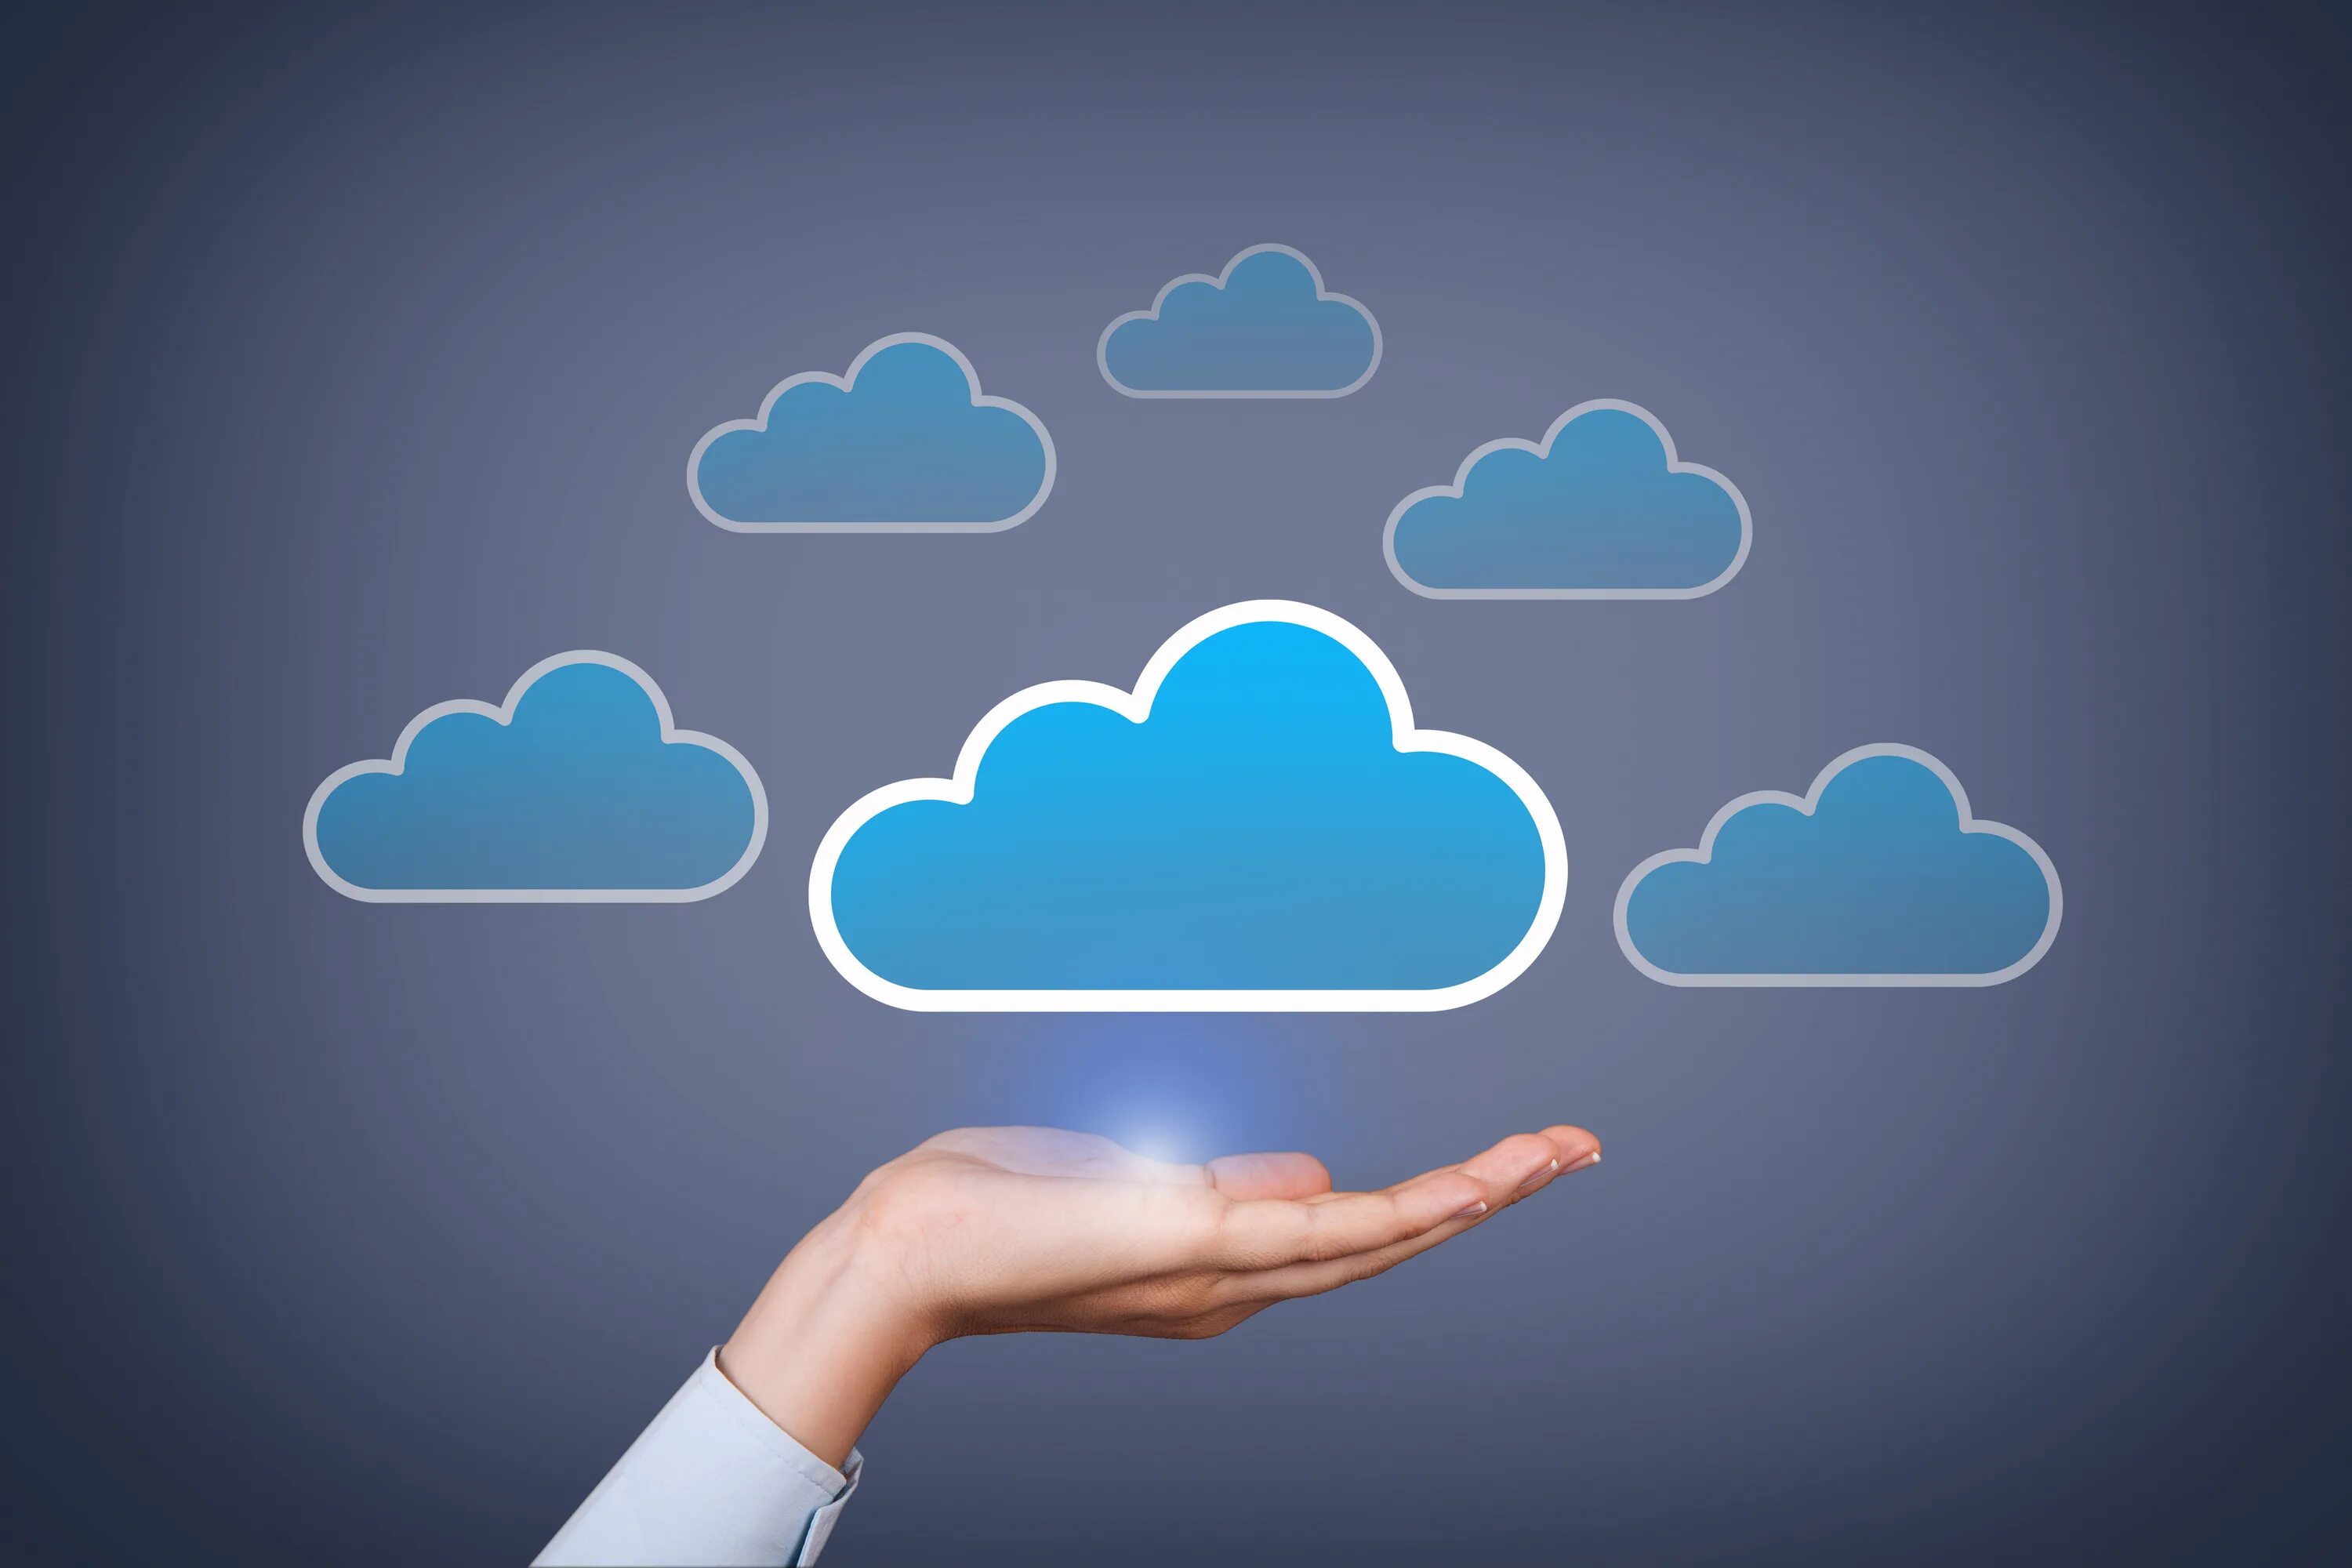 Cloud applications. Облако и облачные вычисления. Технология облачных вычислений. Облачные технологии и облачные вычисления. Облачные технологии cloud.